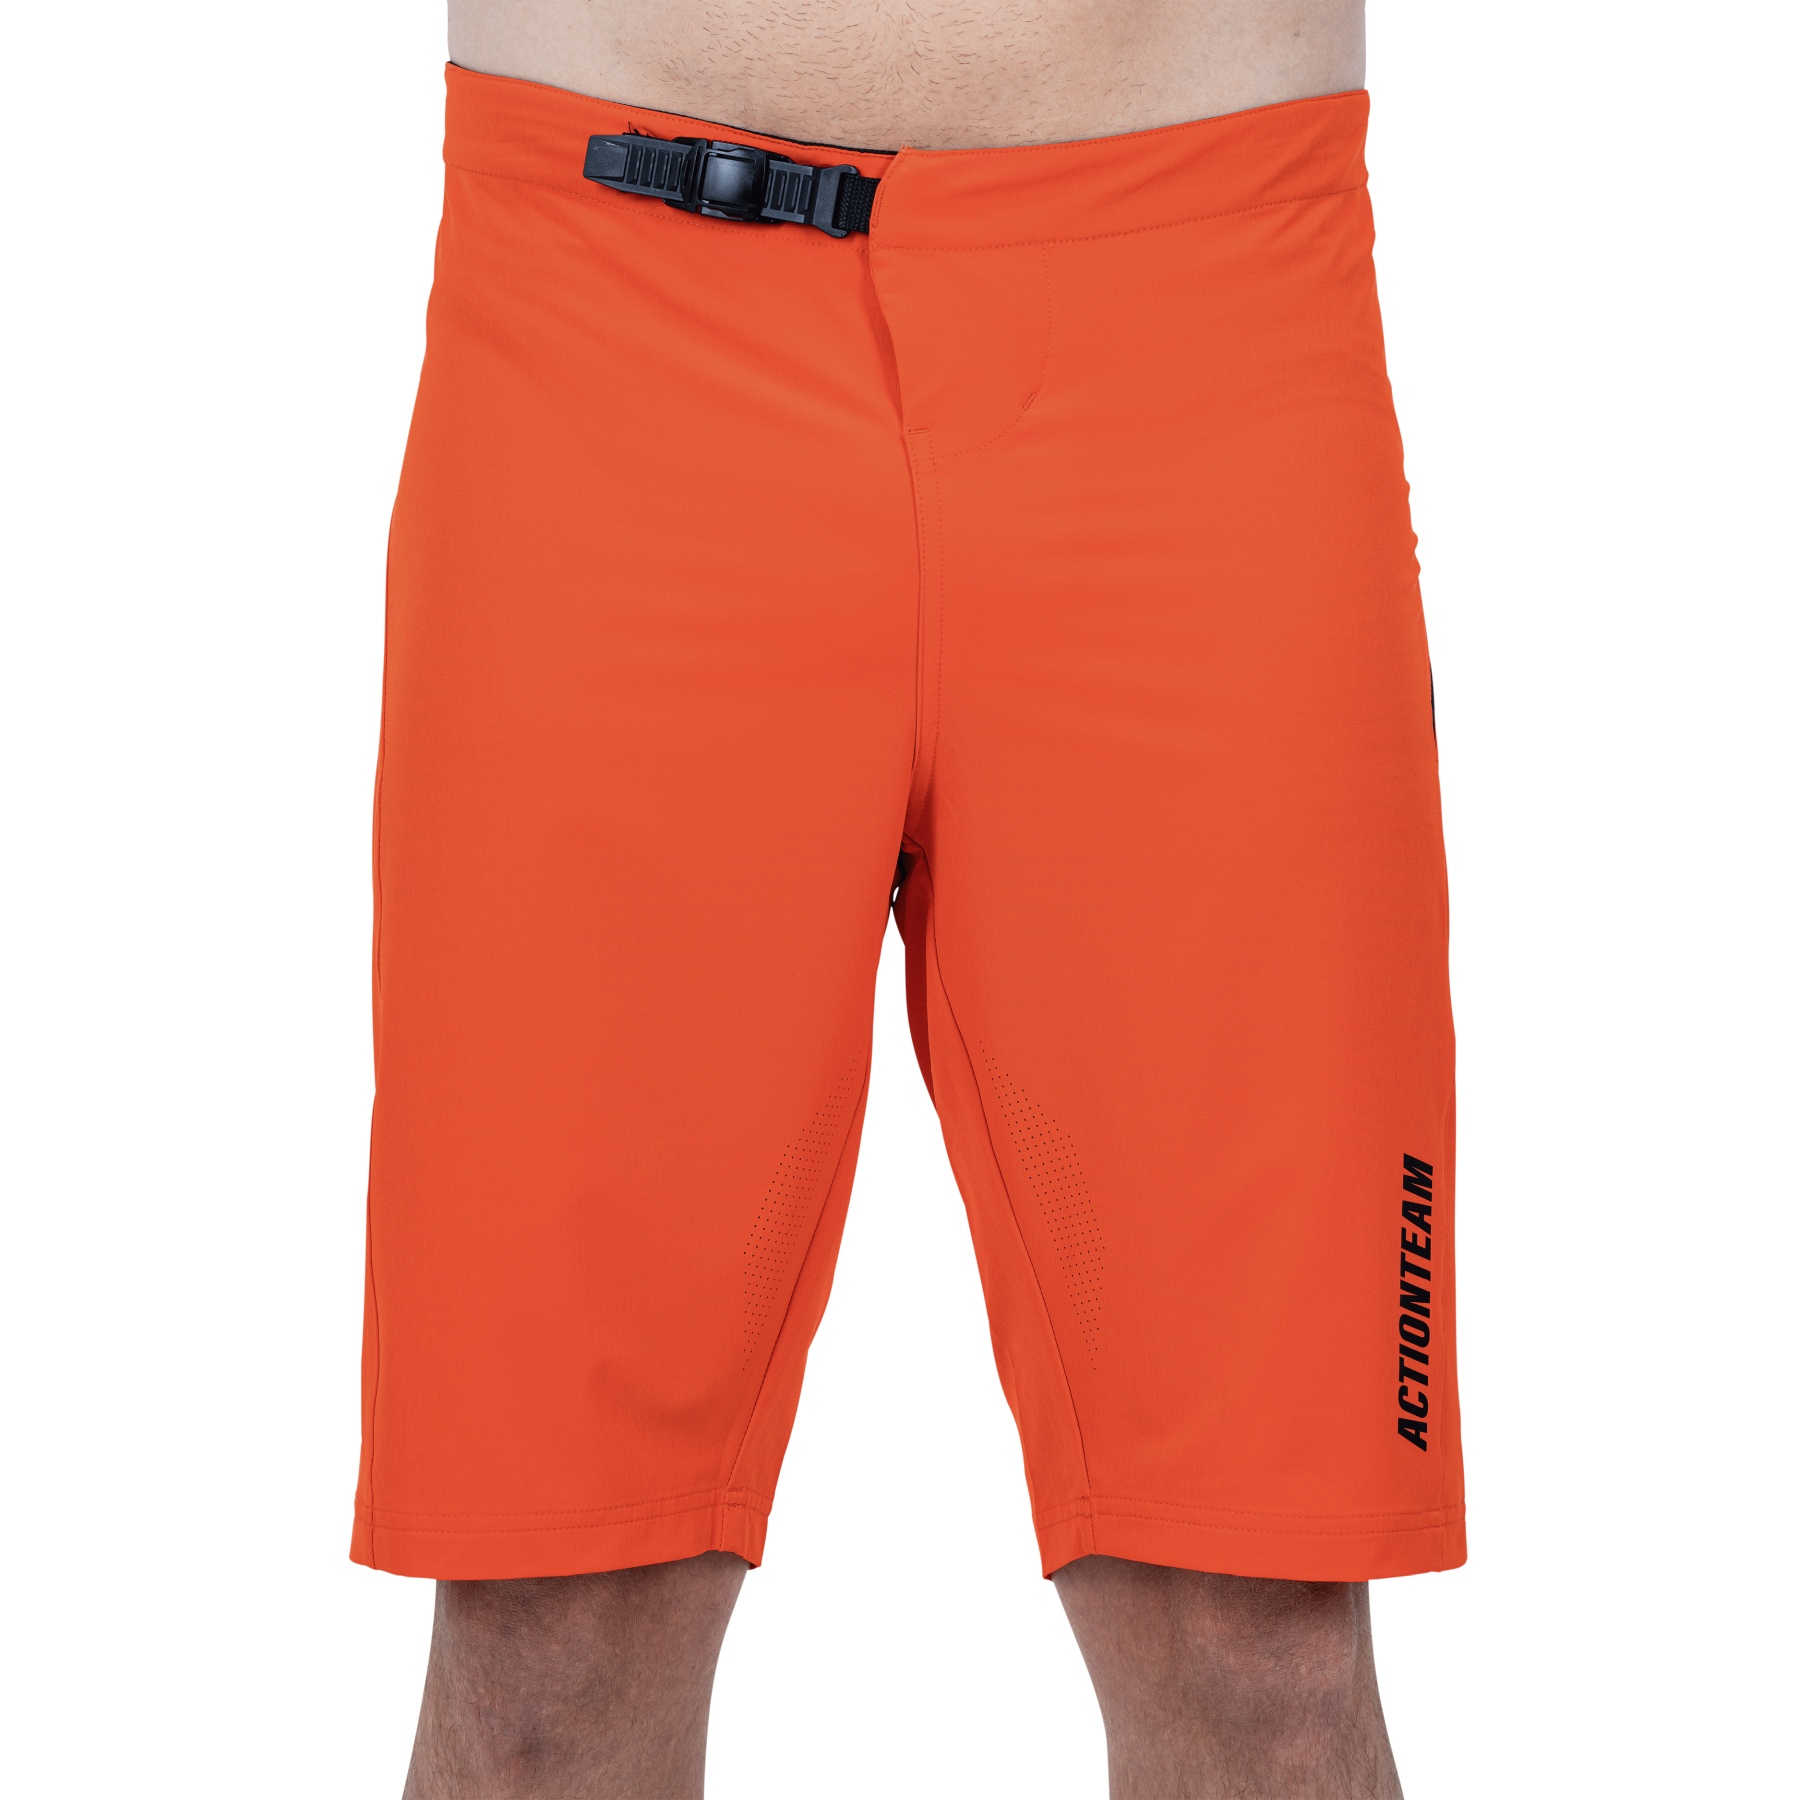 Produktbild von CUBE VERTEX Lightweight Baggy Shorts Herren - orange